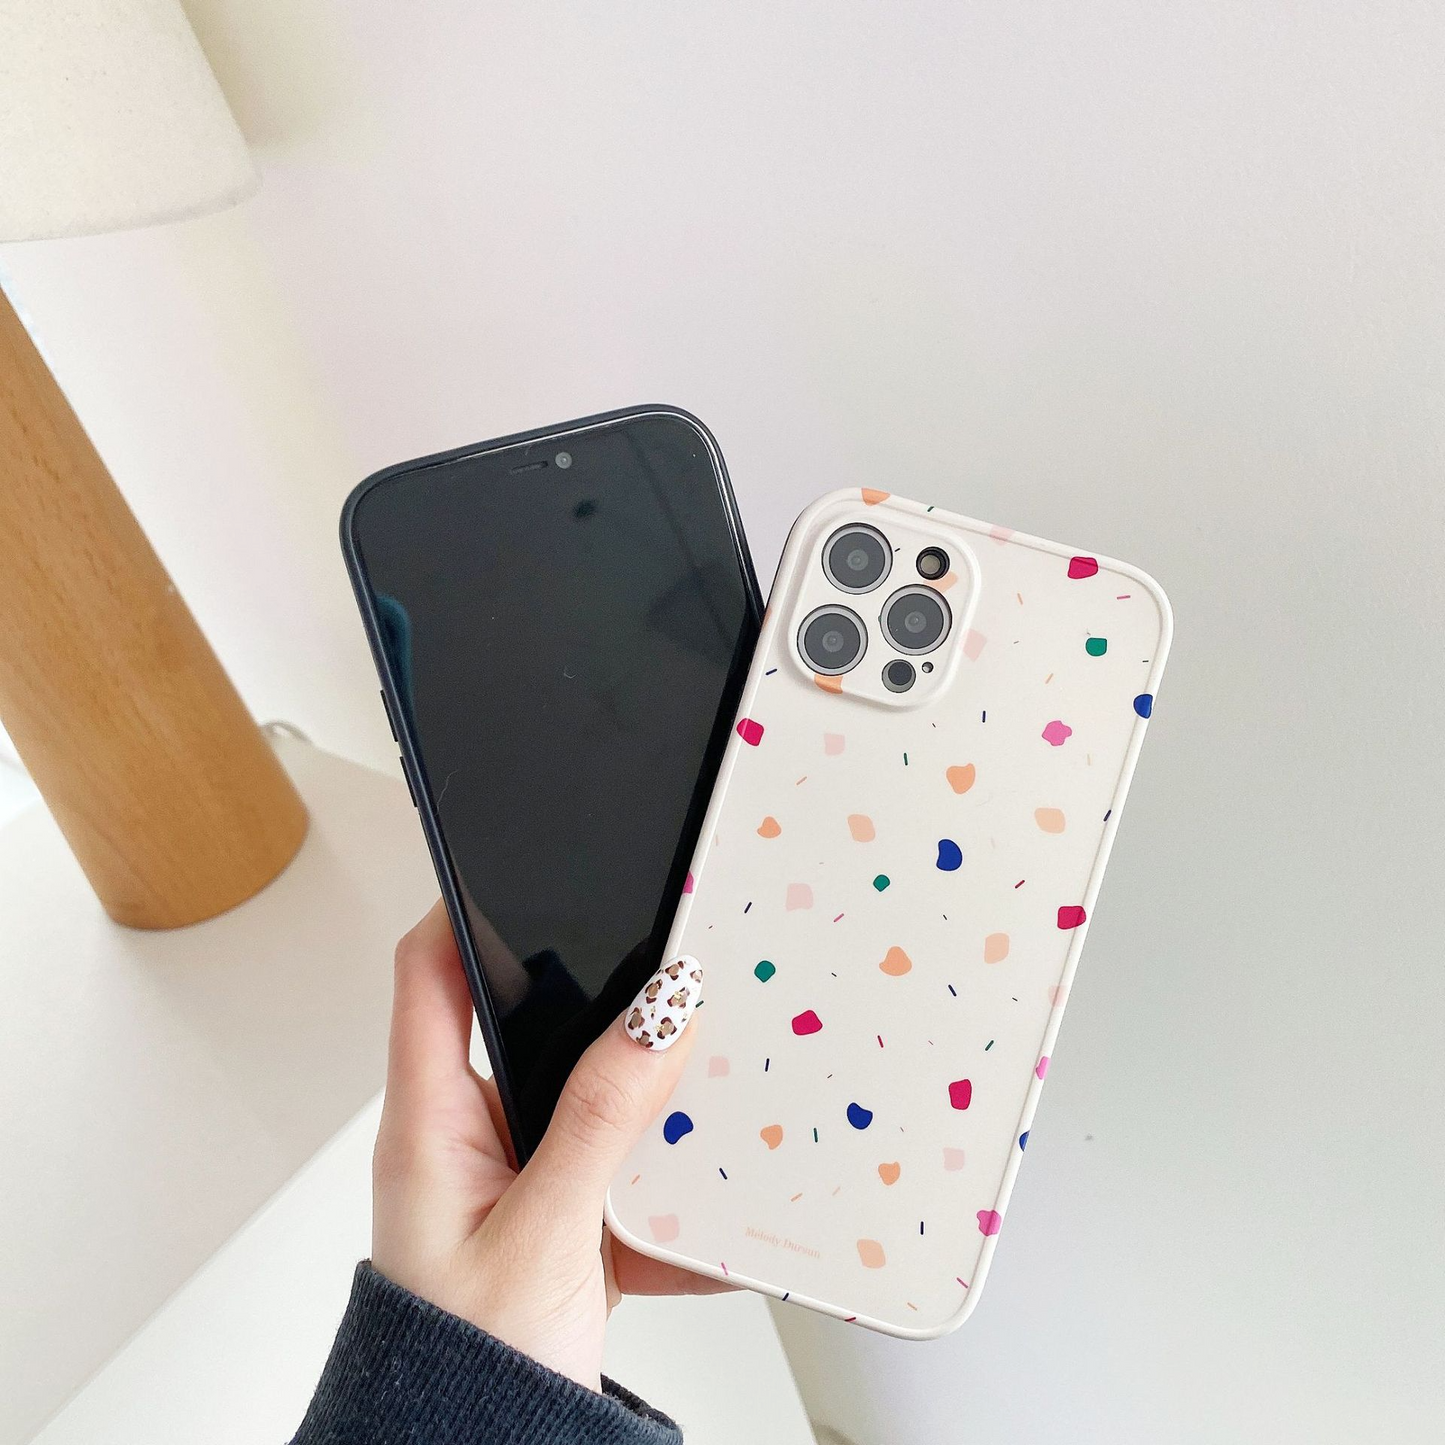 Speckled Tile Pattern iPhone Case (2 Designs)